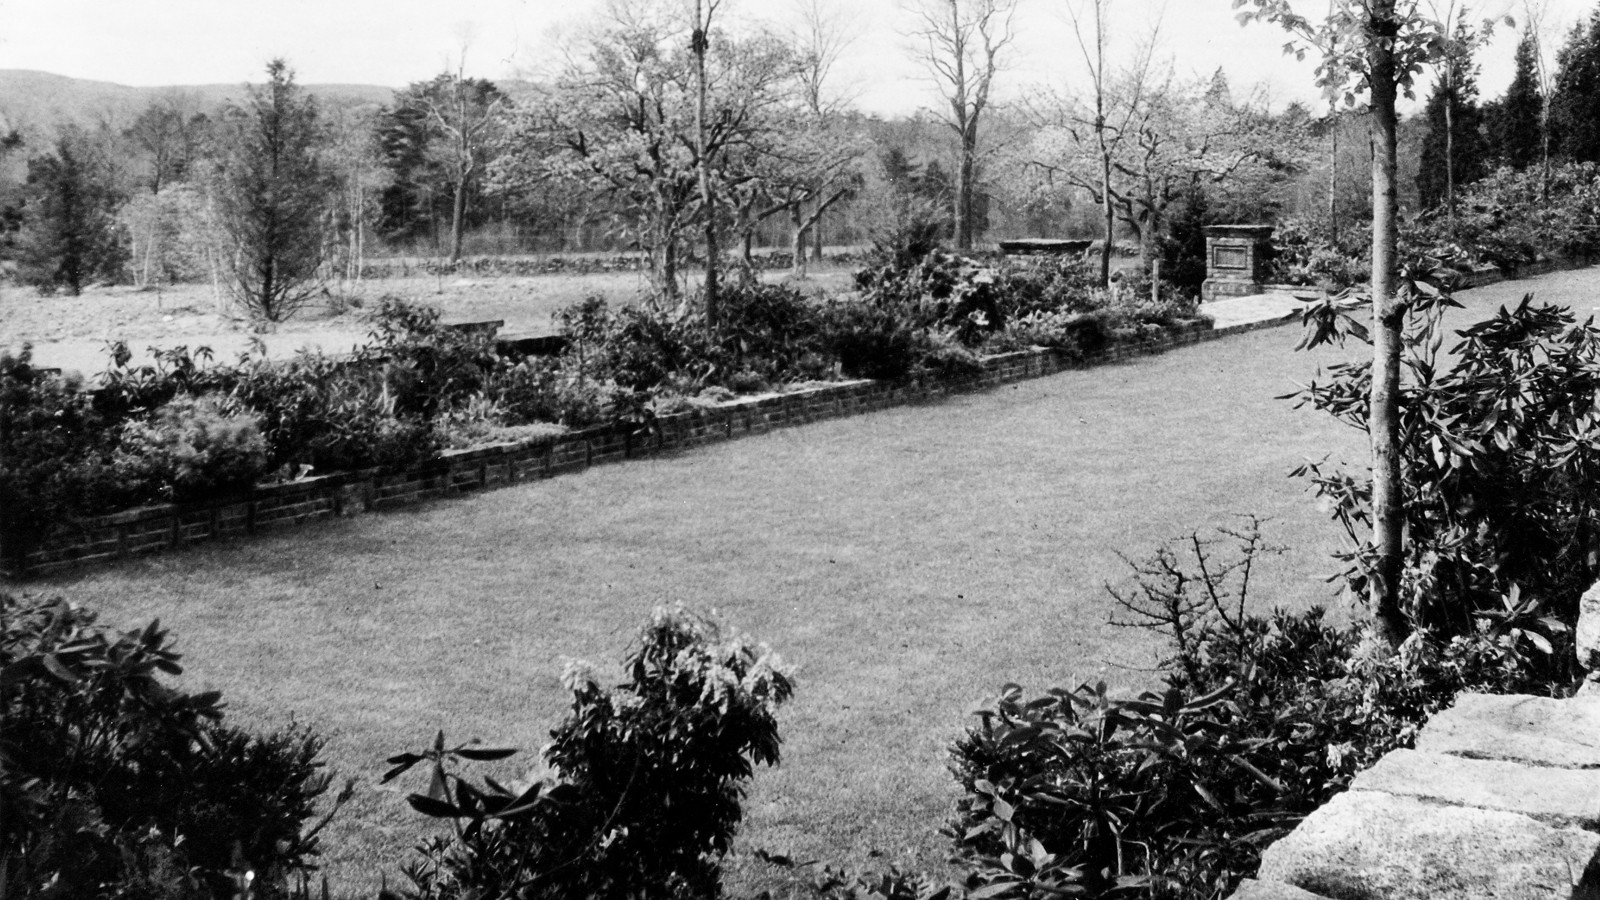 The bowling green in the Spalding Garden, circa 1928